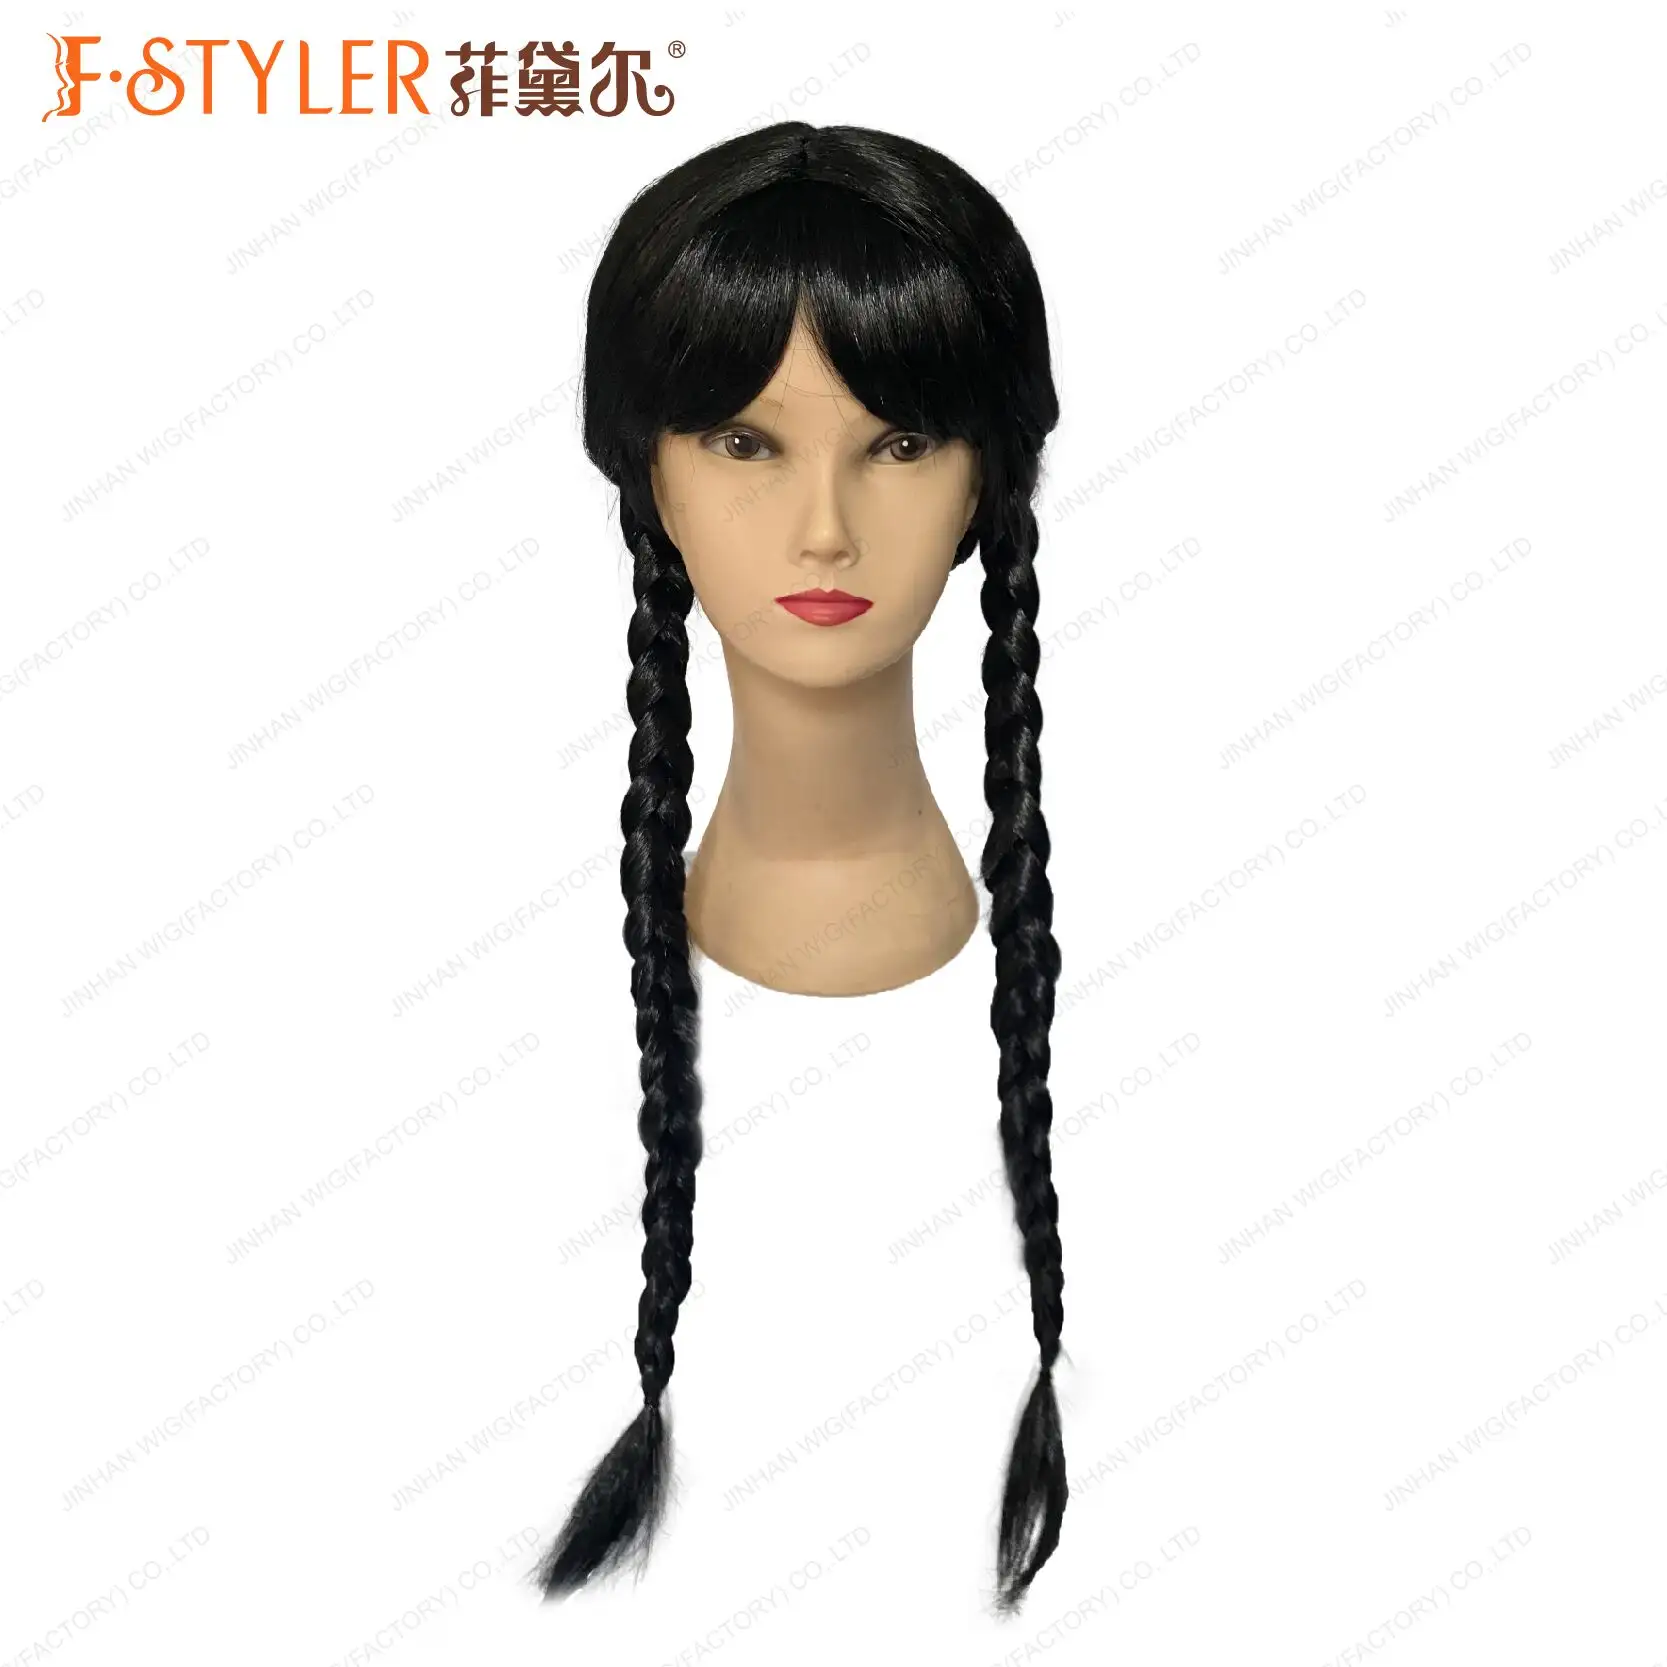 FSTYLER venta al por mayor pelo negro niño Halloween fiesta de noche miércoles Addams Cosplay peluca venta a granel pelucas de cosplay sintéticas